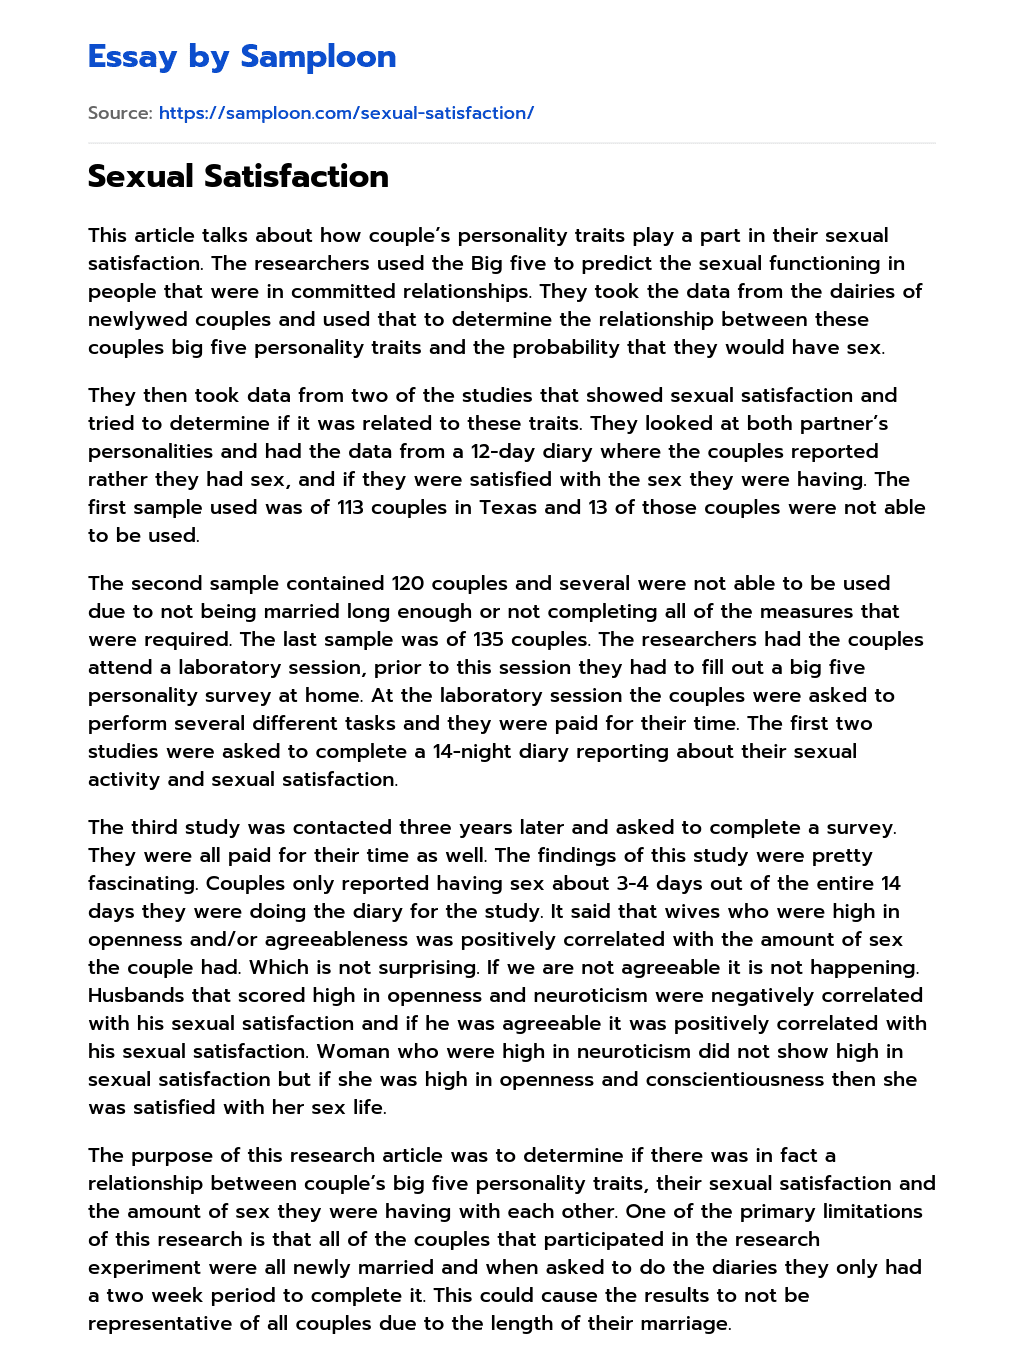 Sexual Satisfaction essay